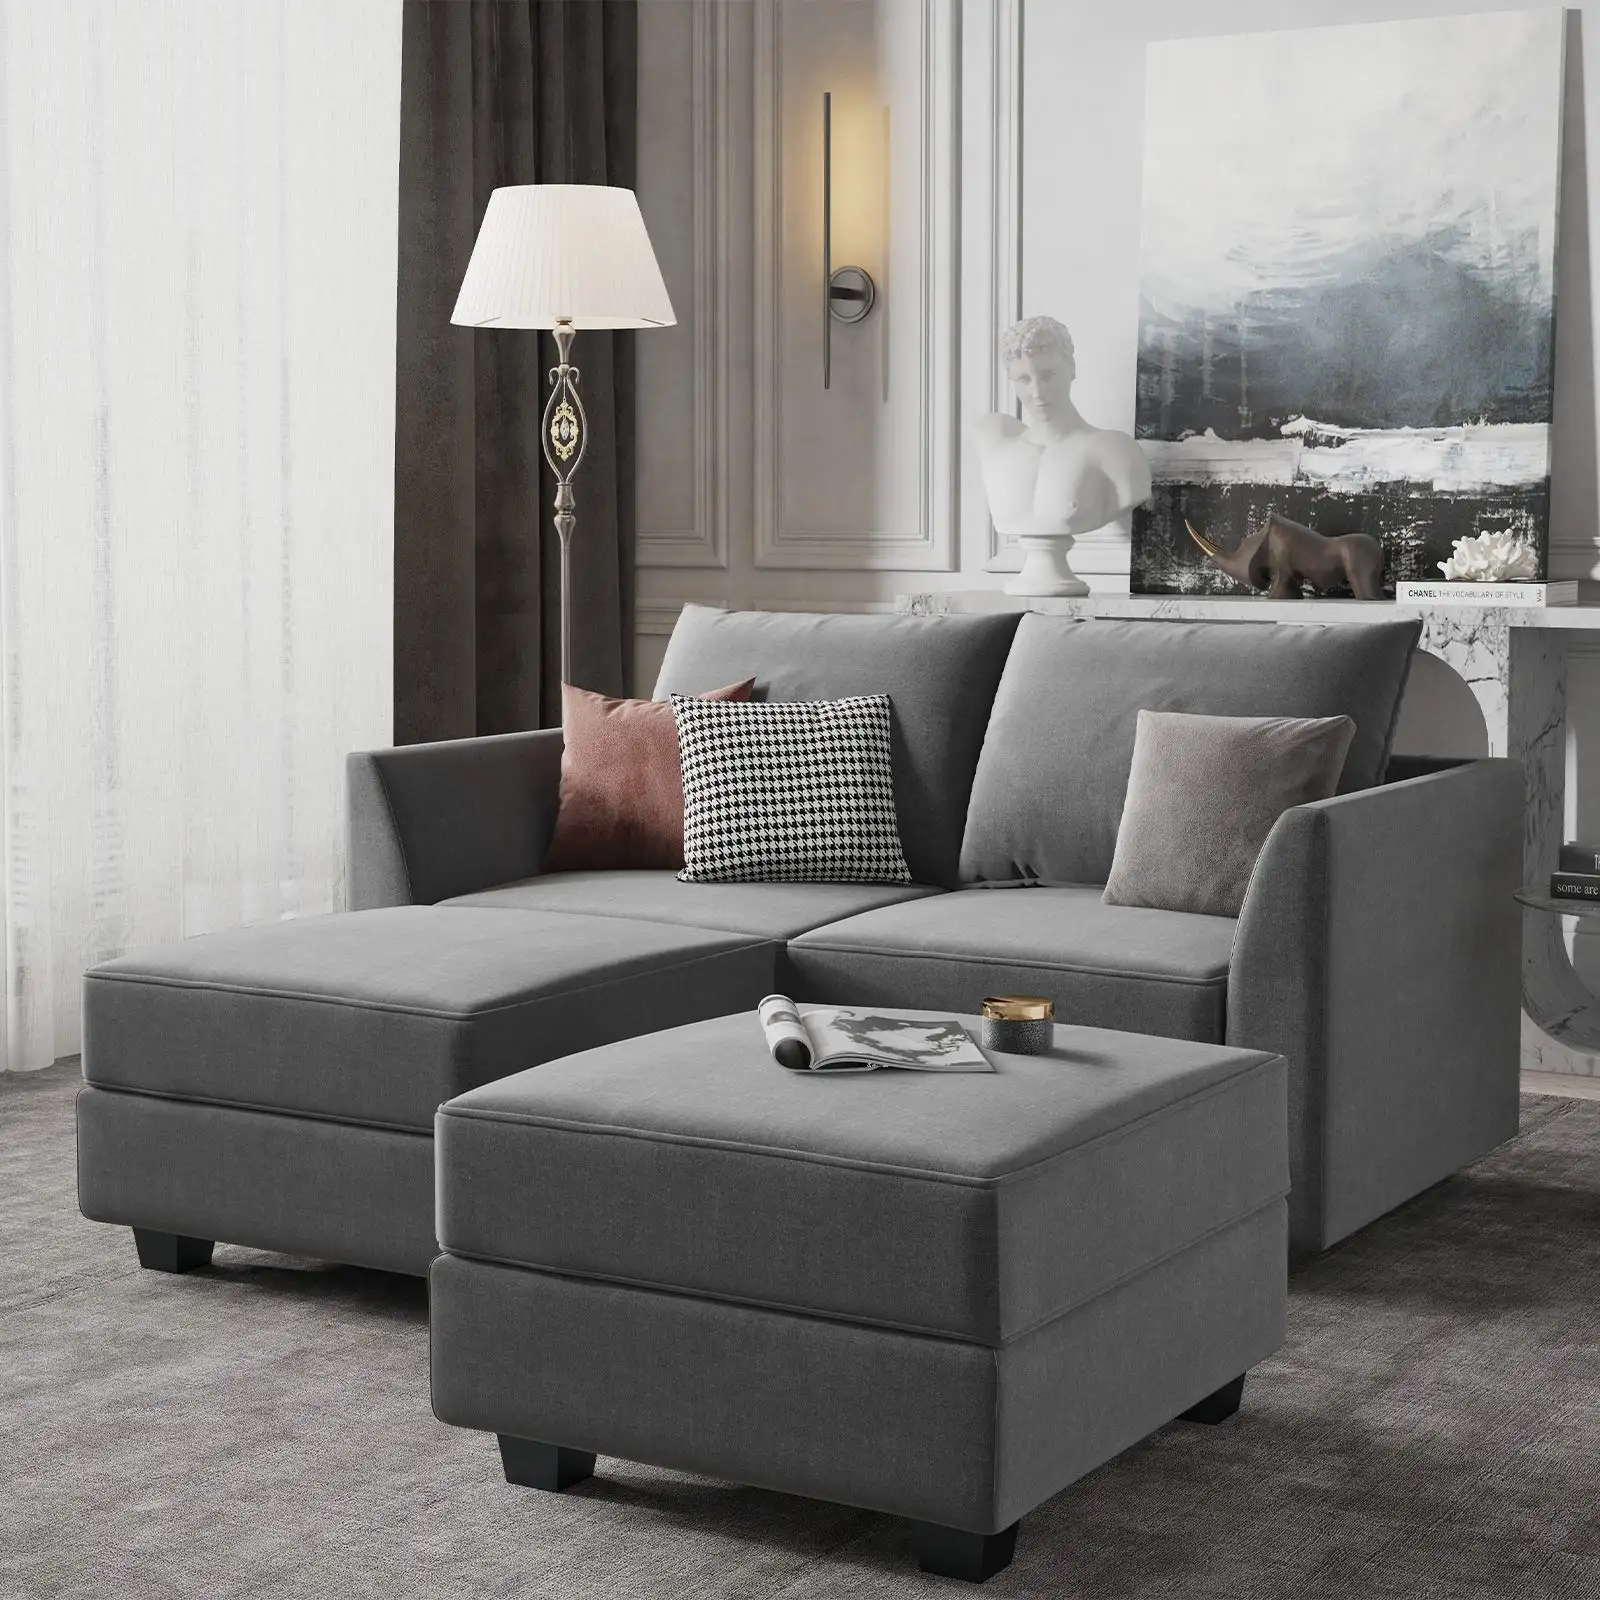 CY-sofá profesional para sala de estar, muebles cómodos y profundos, diseño de sofá para sala de estar